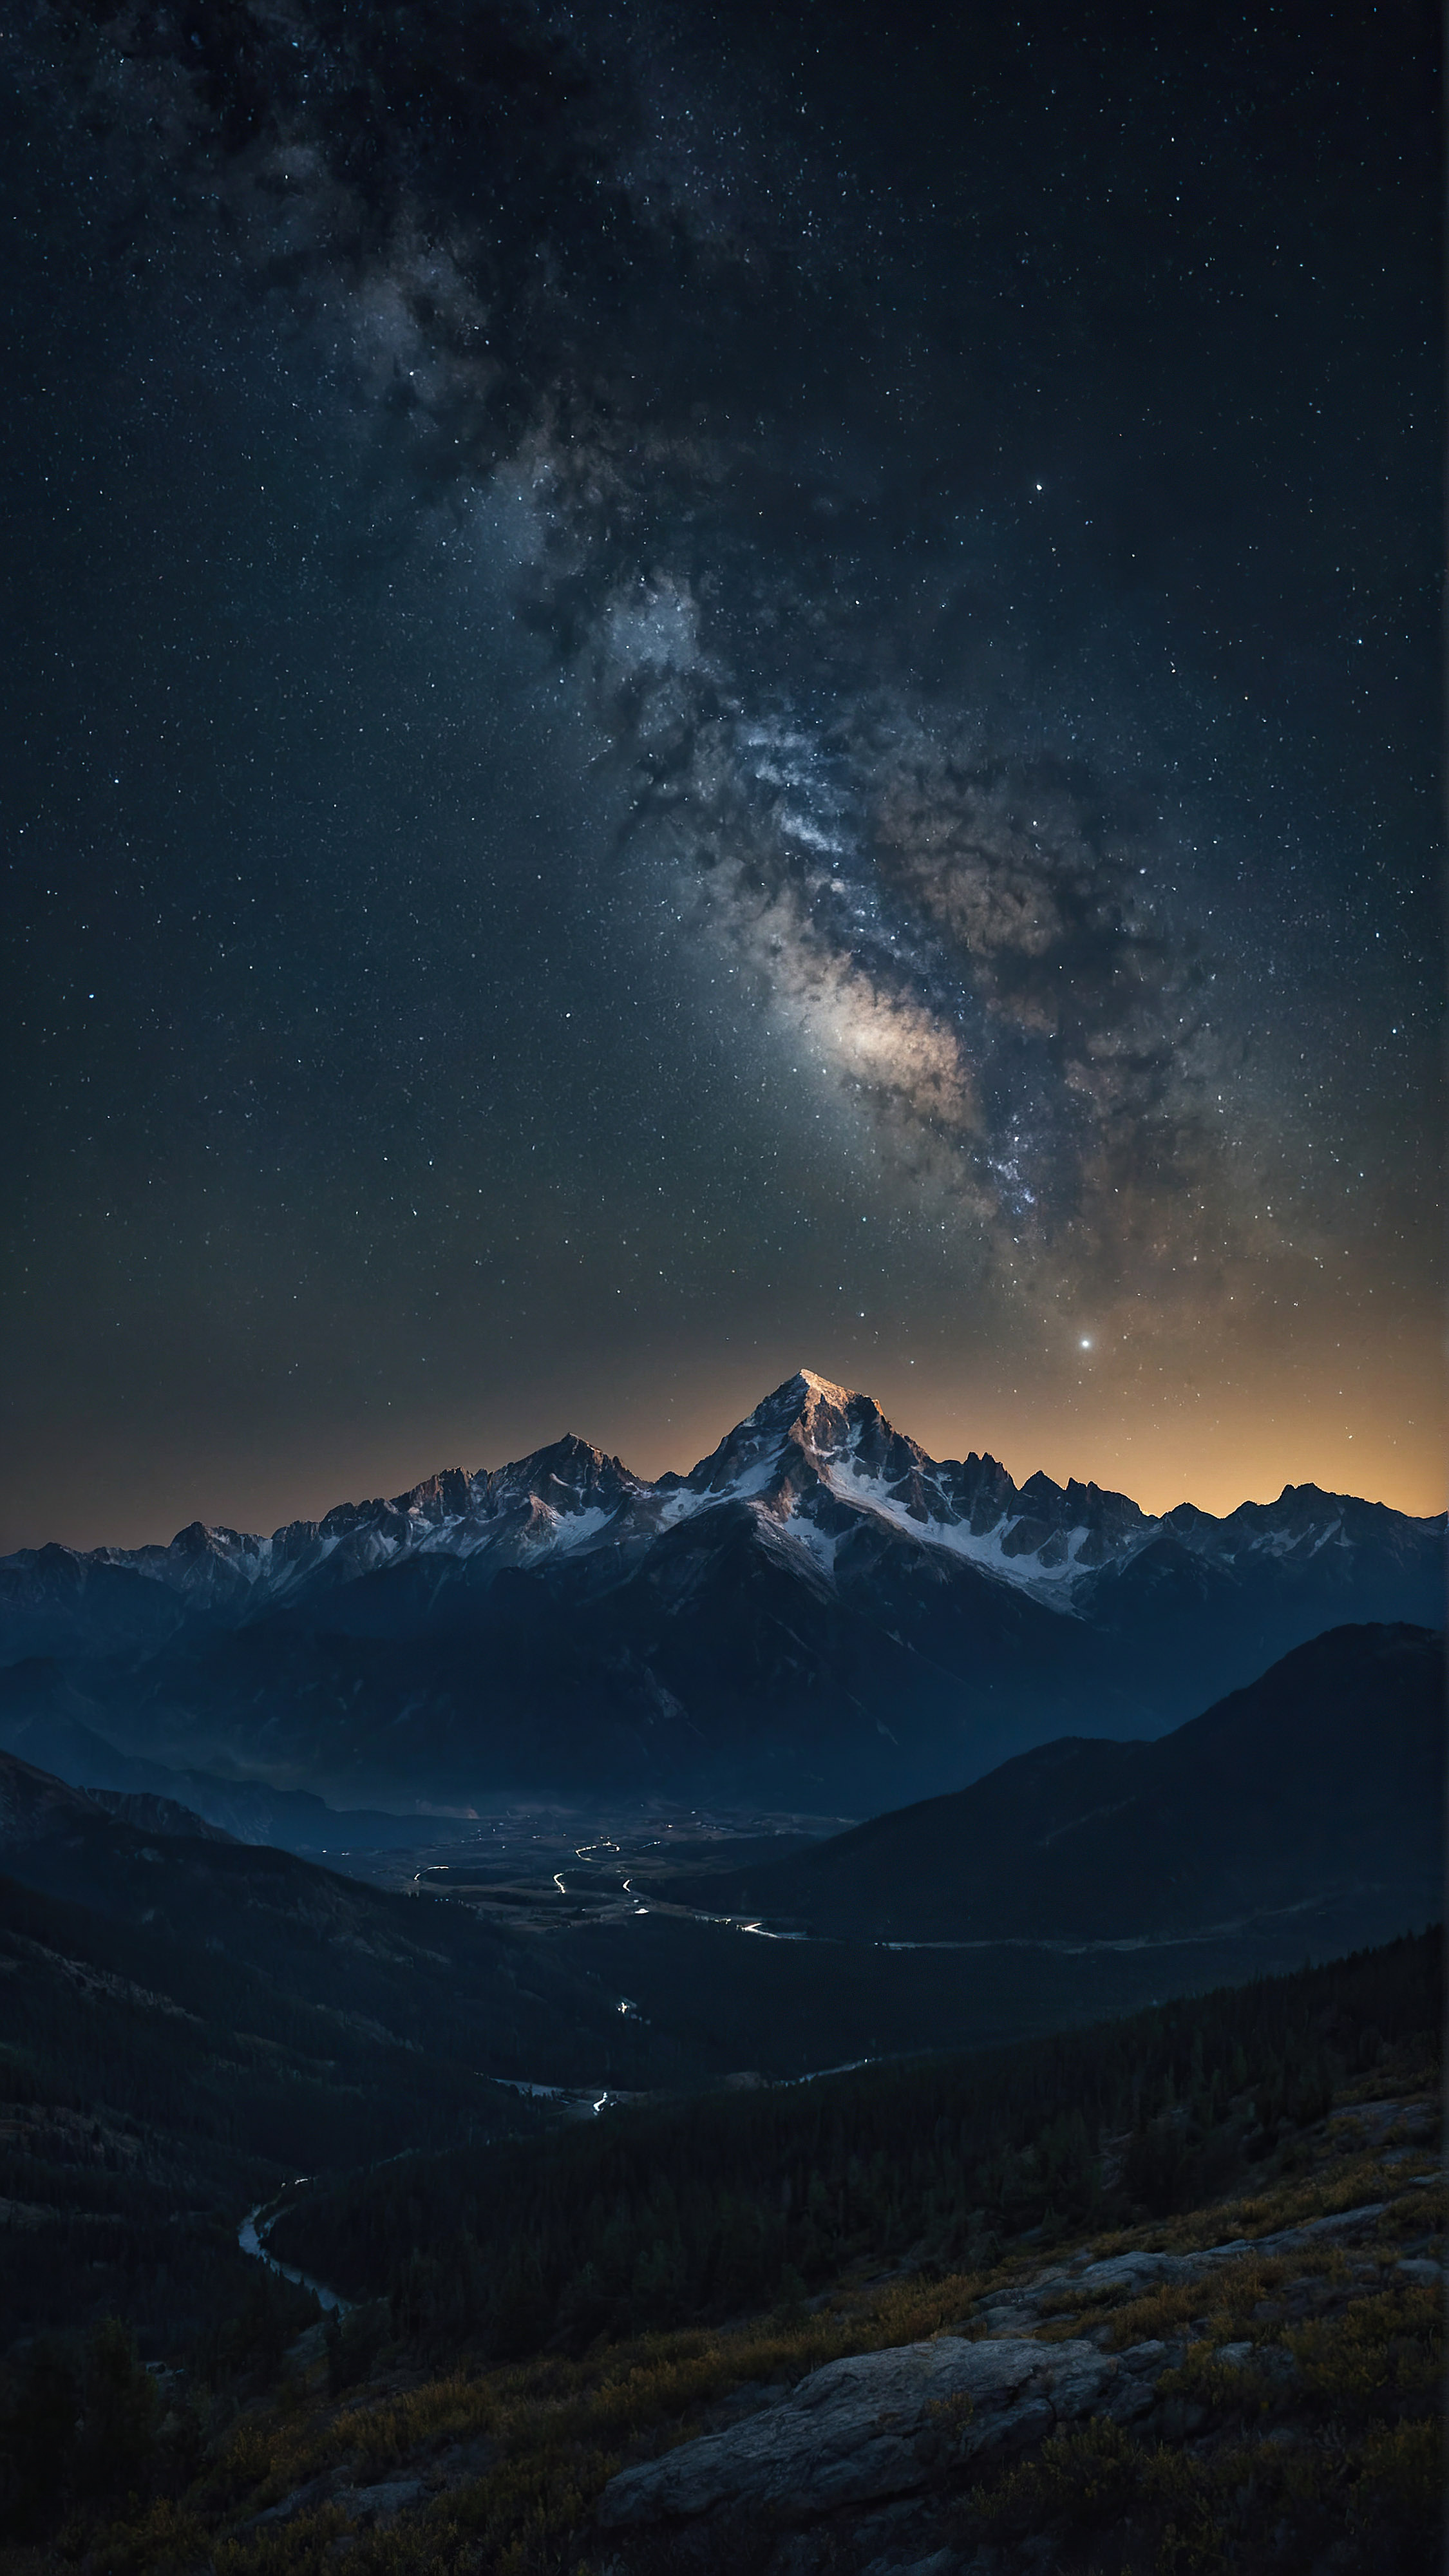 Téléchargez gratuitement ce fond d'écran iPhone en 4K, capturant une scène nocturne à couper le souffle d'une chaîne de montagnes accidentée sous un ciel étoilé, avec d'innombrables étoiles ajoutant à l'atmosphère sereine et majestueuse du paysage.